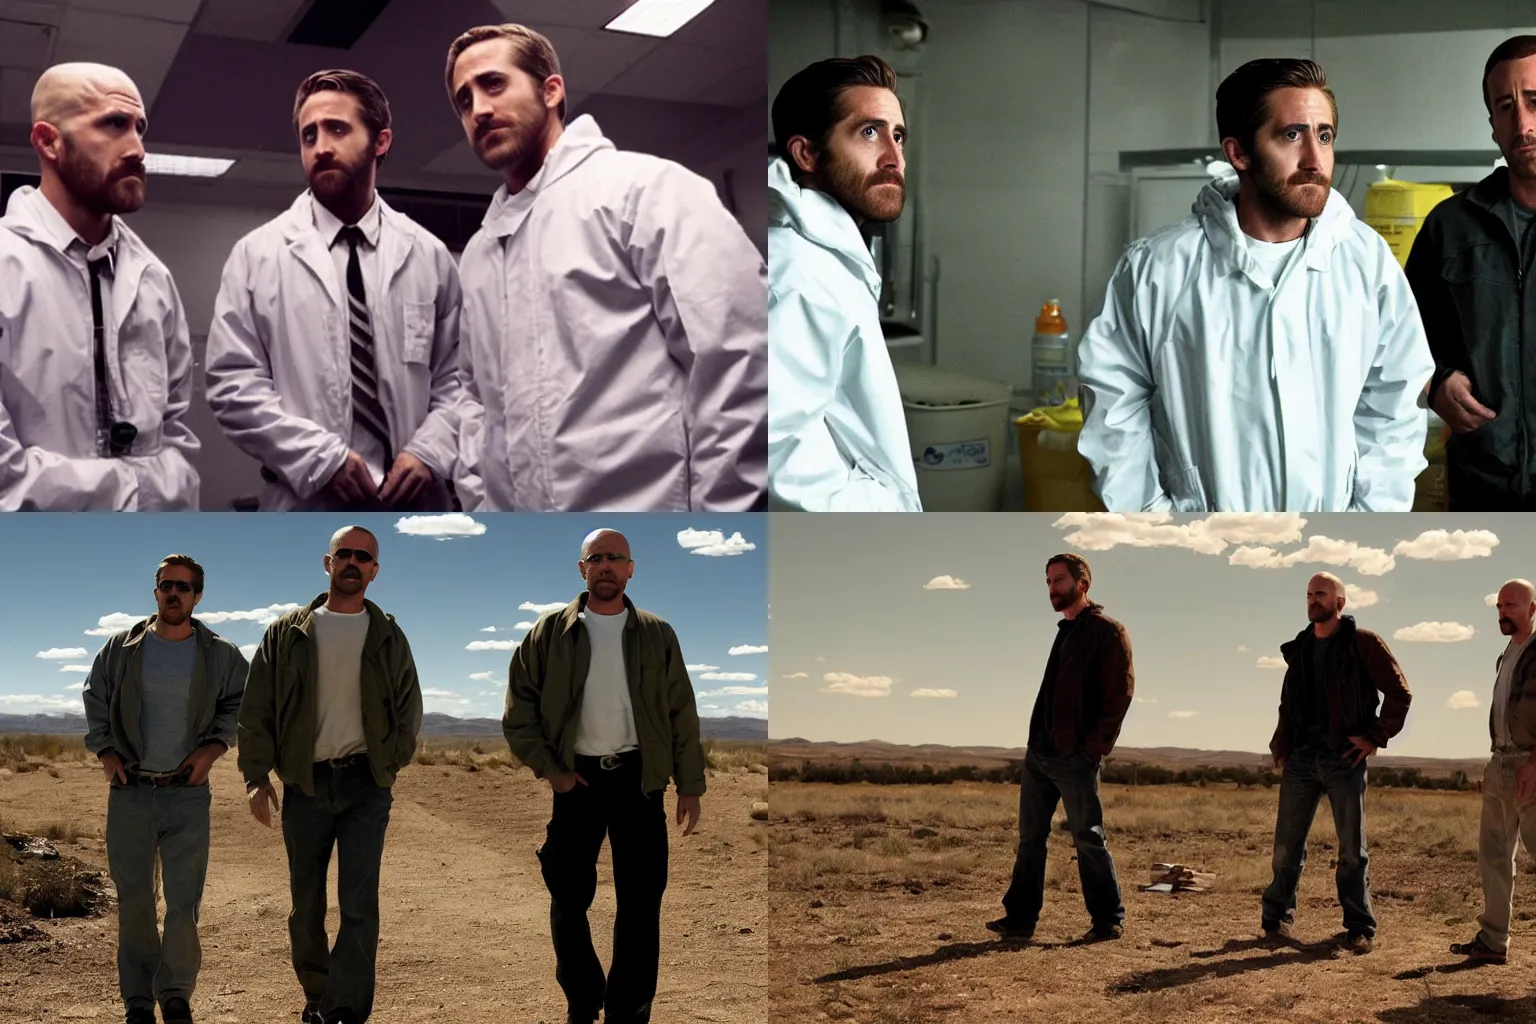 Prompt: Jake Gyllenhaal and Ryan Gosling in Breaking Bad (2008), meth lab, film still